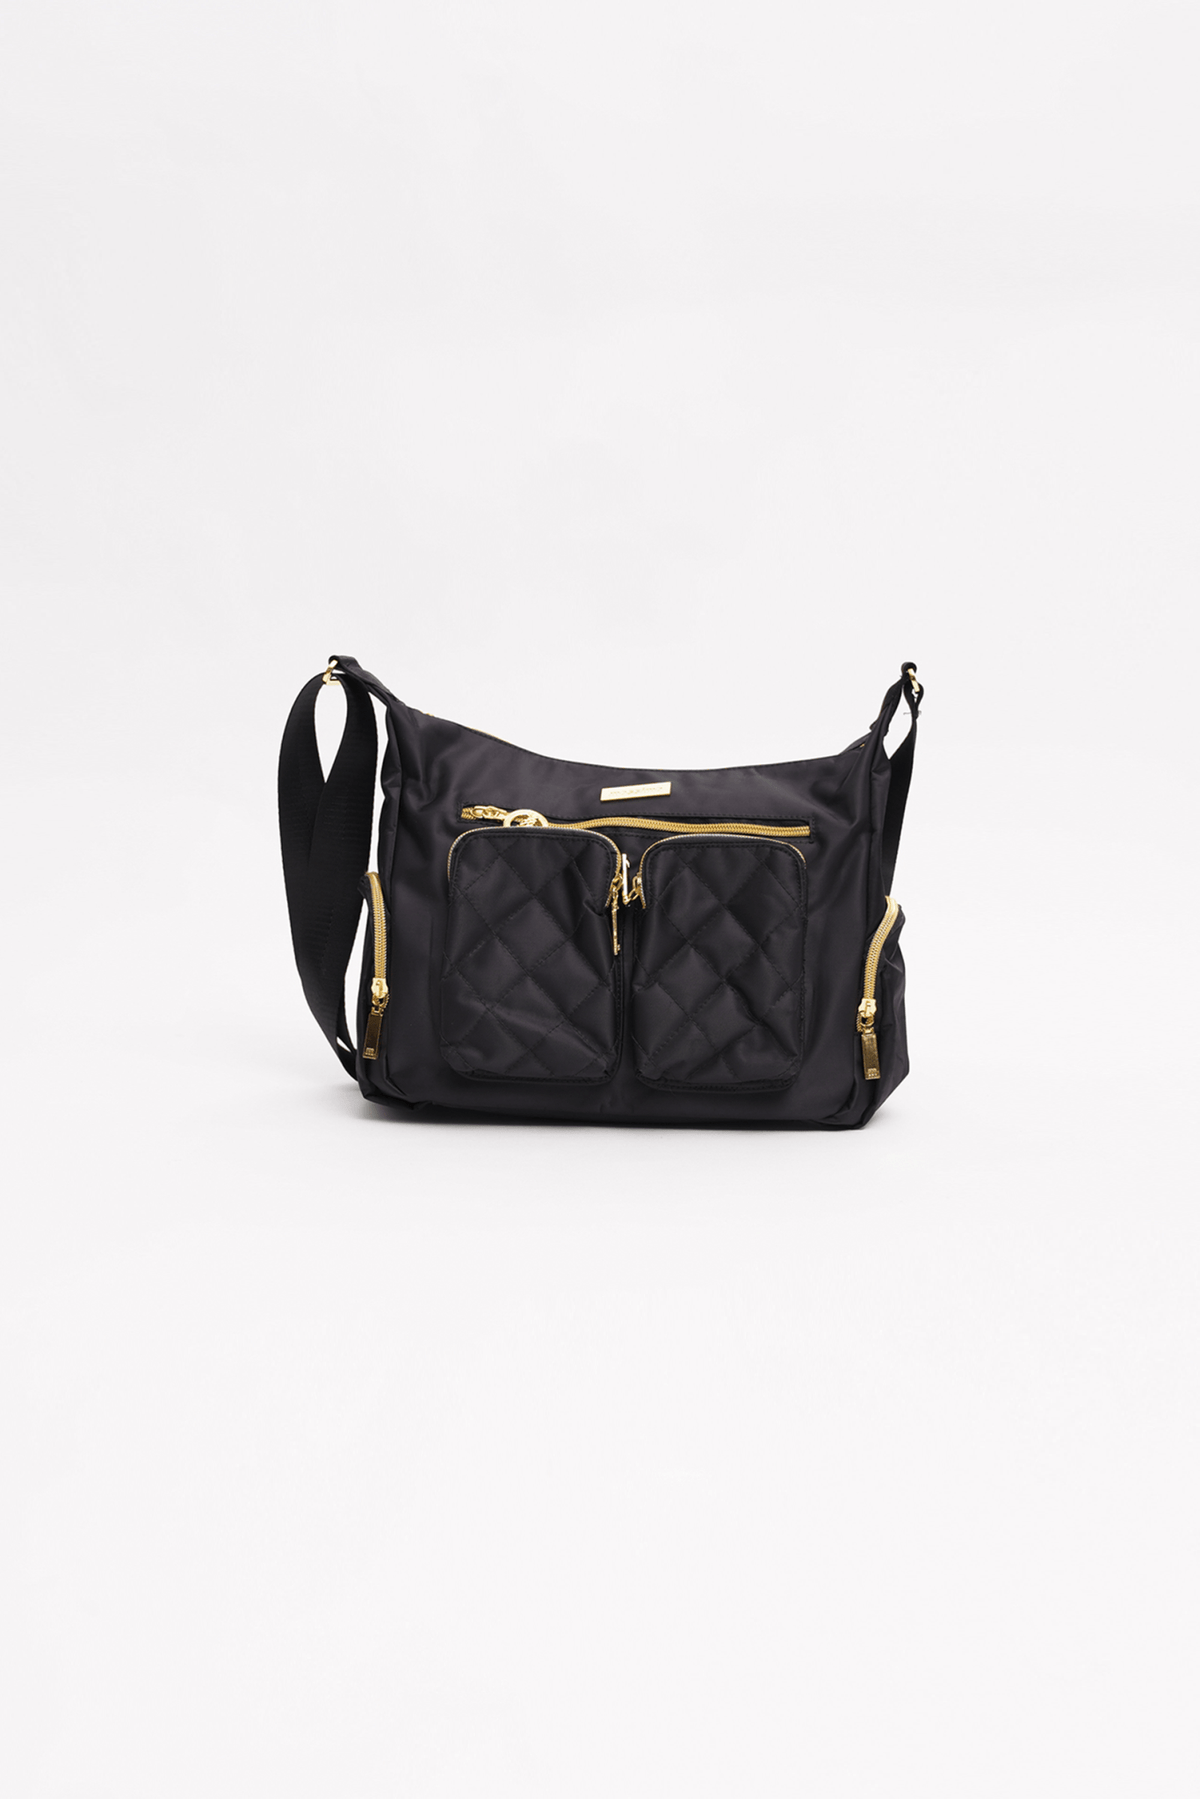 Black Shoulder Bag w/ 2 Pockets - Mossimo PH